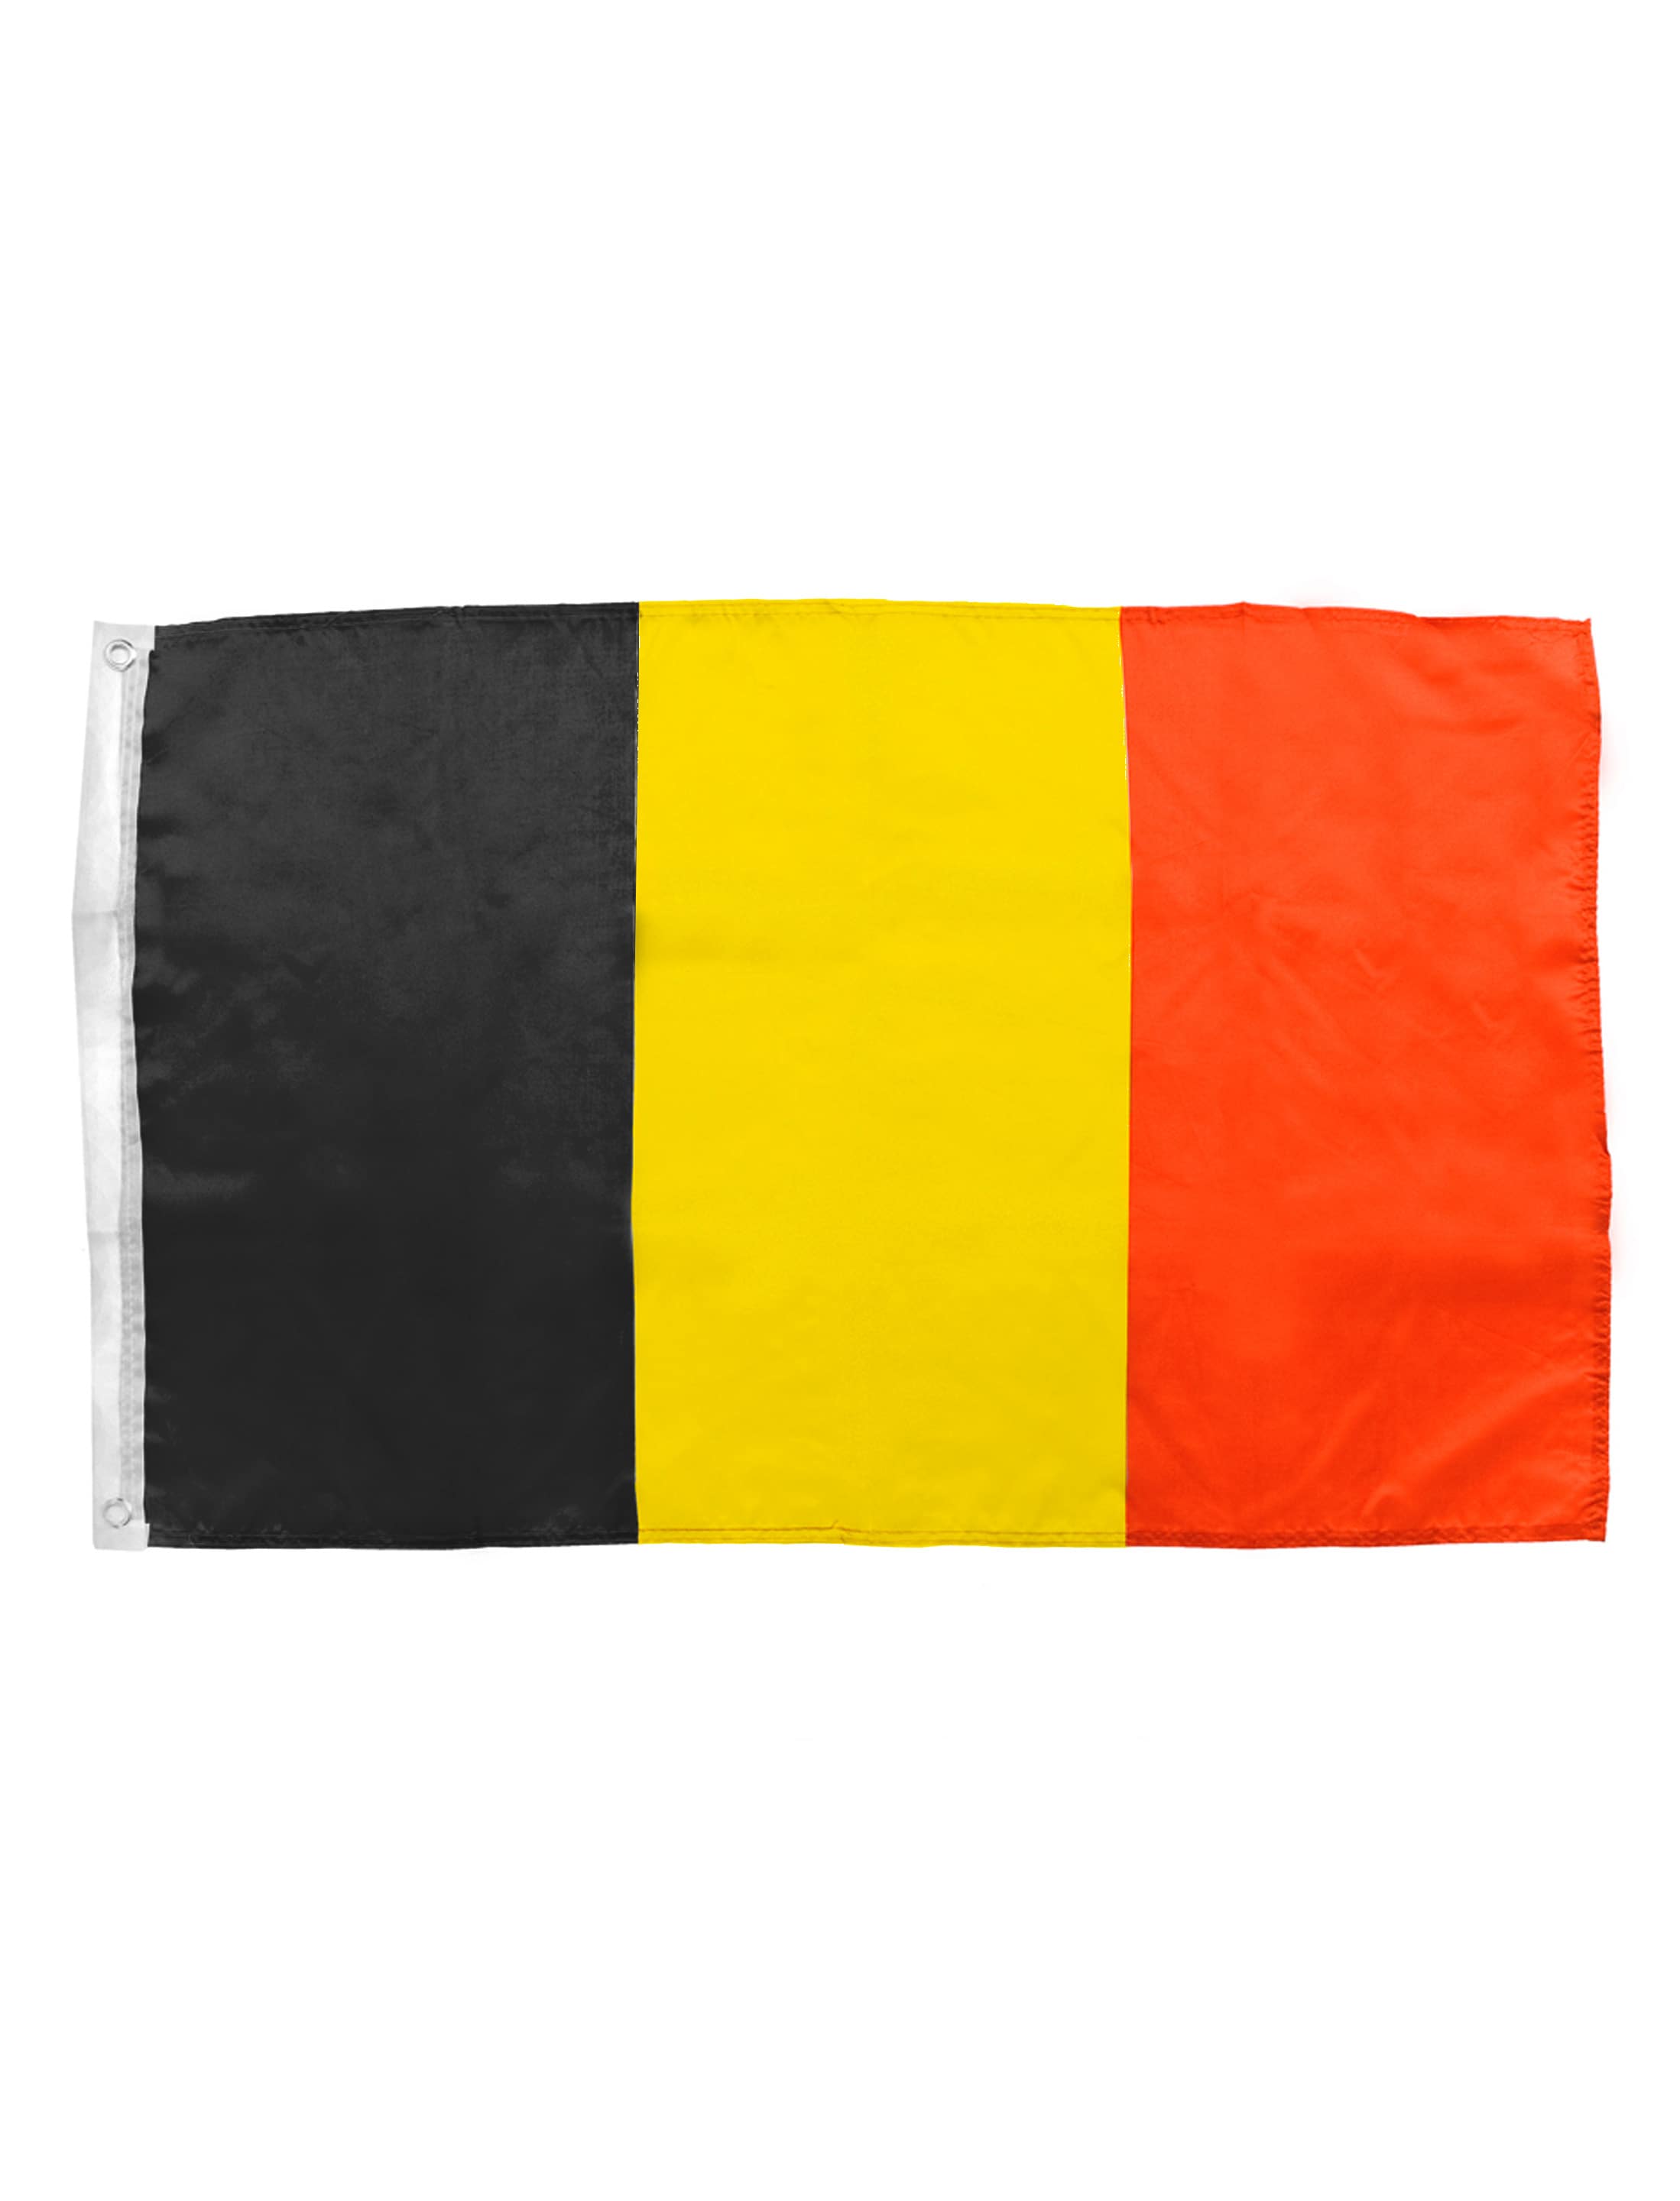 Flagge Belgien 150x90cm